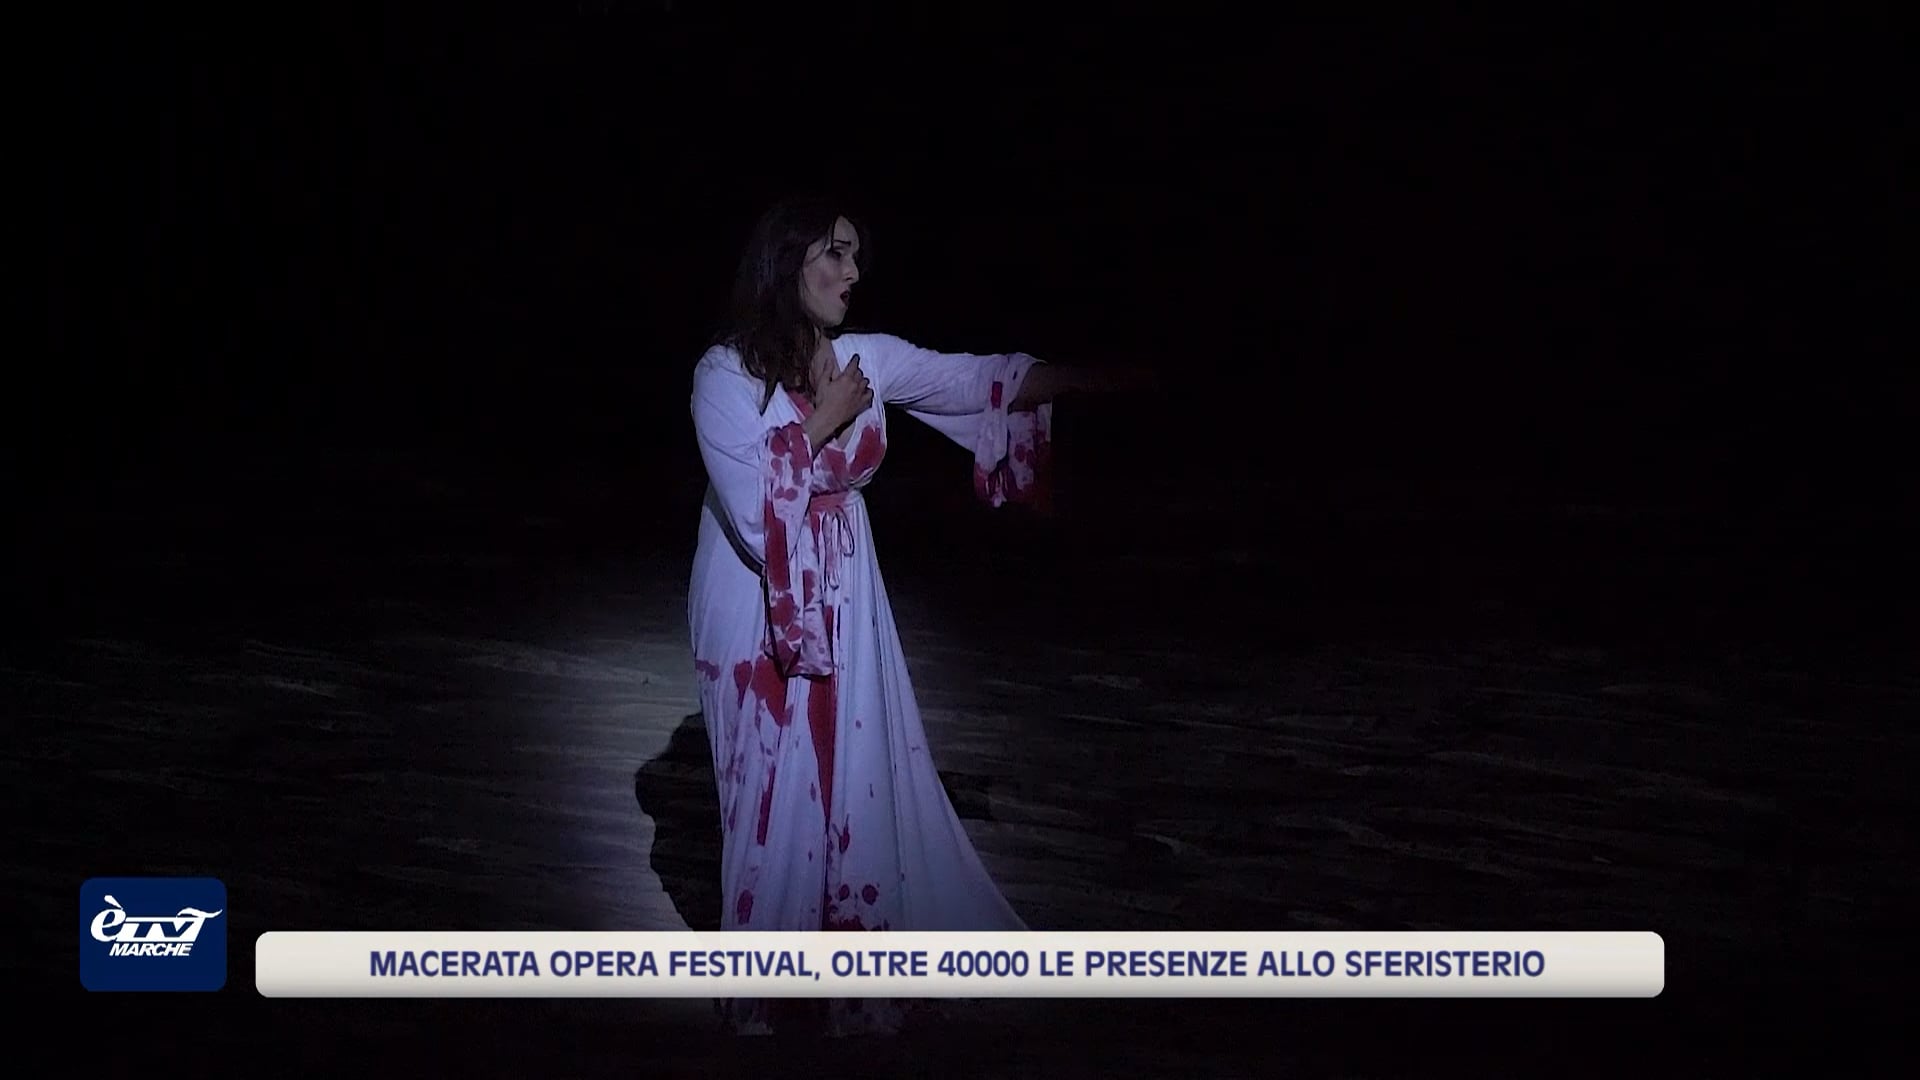 Macerata Opera Festival, oltre 40000 le presenze allo Sferisterio - VIDEO